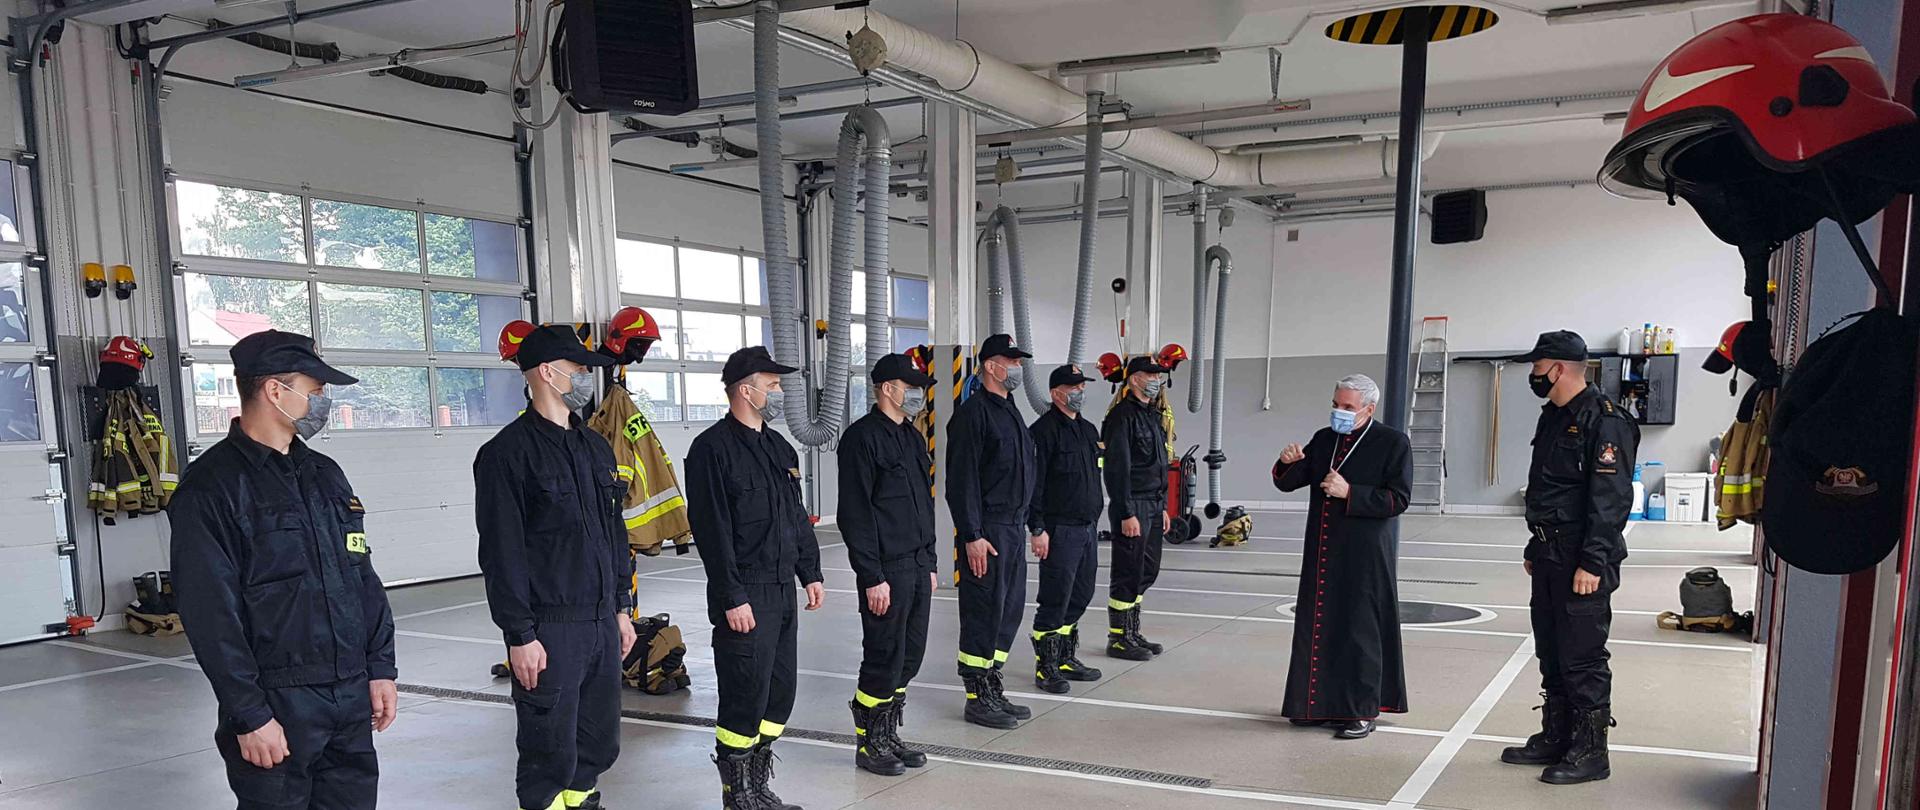 Zdjęcie zrobione w dzień w garażu JRG Sandomierz. Na zdjęciu widać siedmiu strażaków, którzy stoją w szeregu oraz księdza biskupa i komendanta powiatowego.
W dalszej części zdjęcia widać ubrania i hełmy strażackie.
